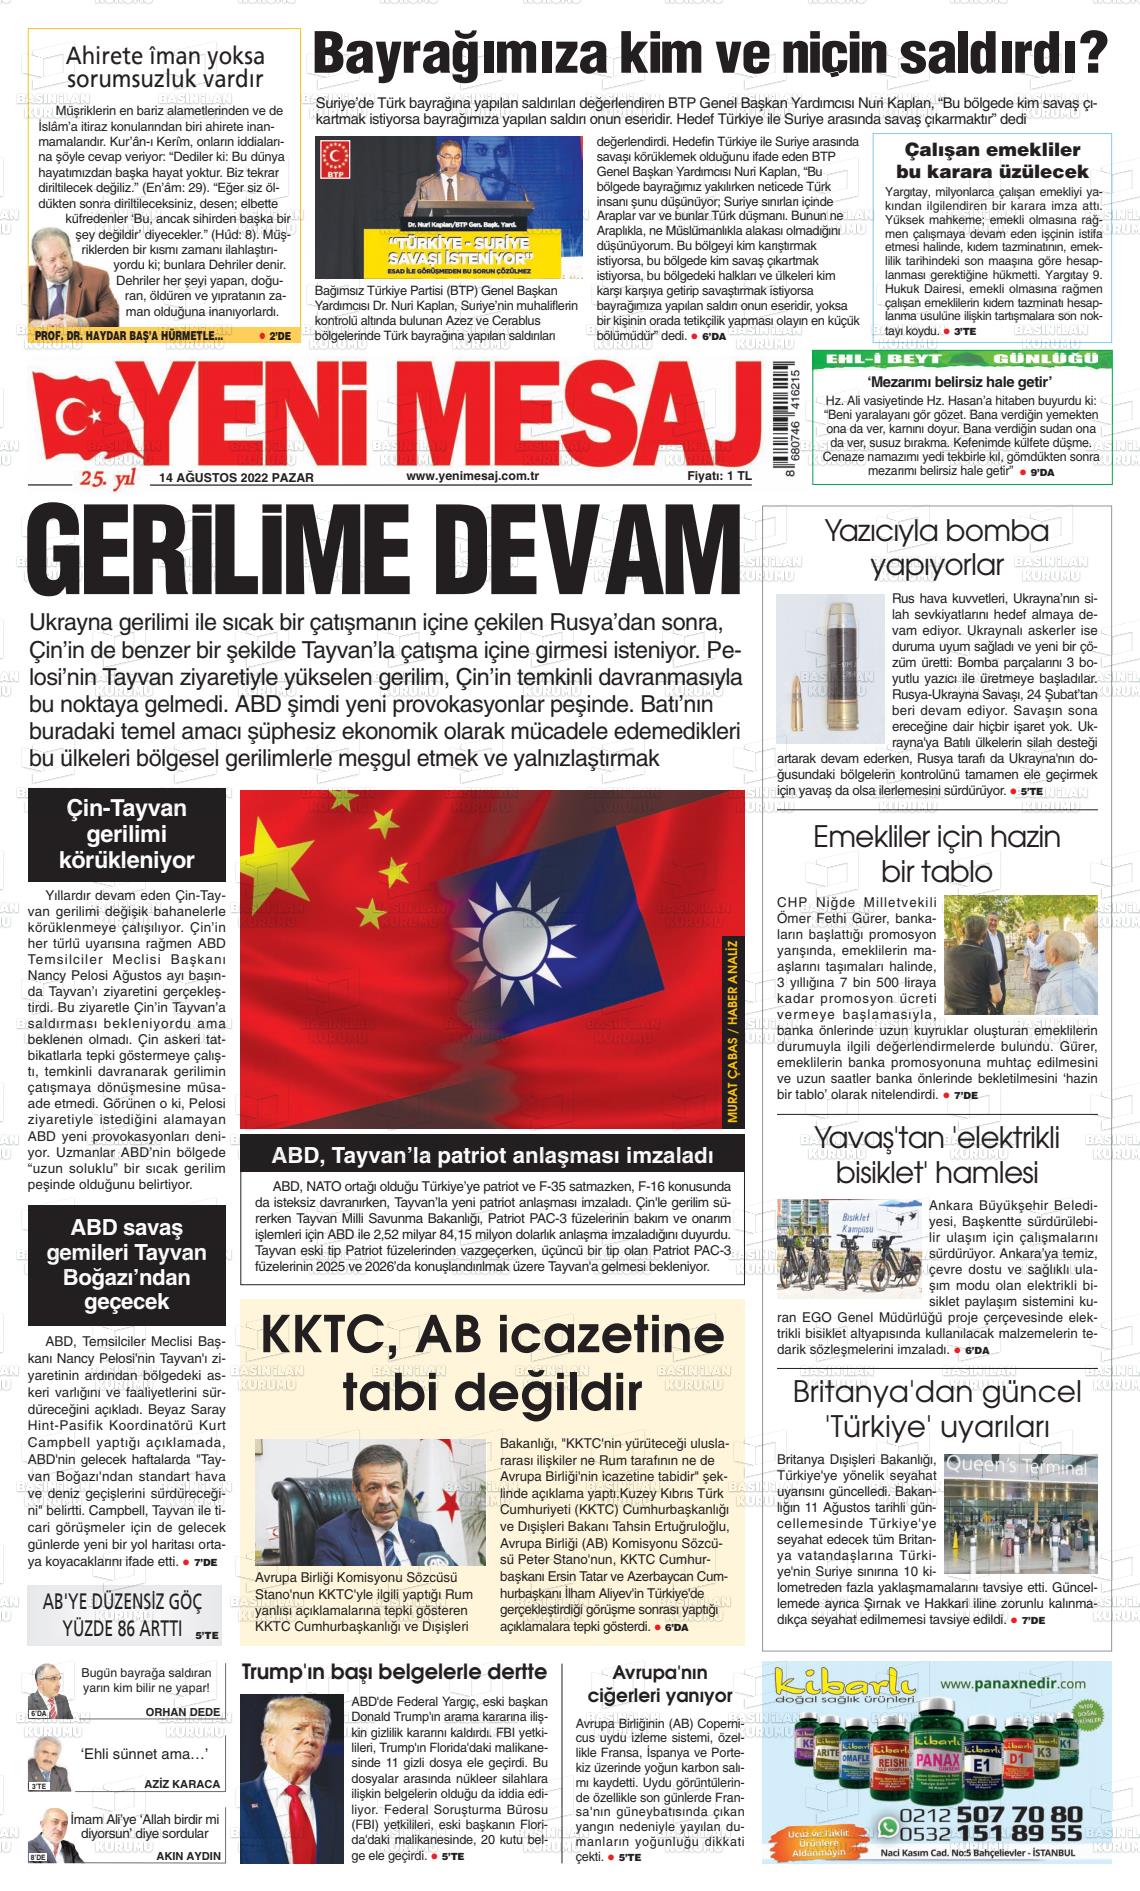 14 Ağustos 2022 Yeni Mesaj Gazete Manşeti